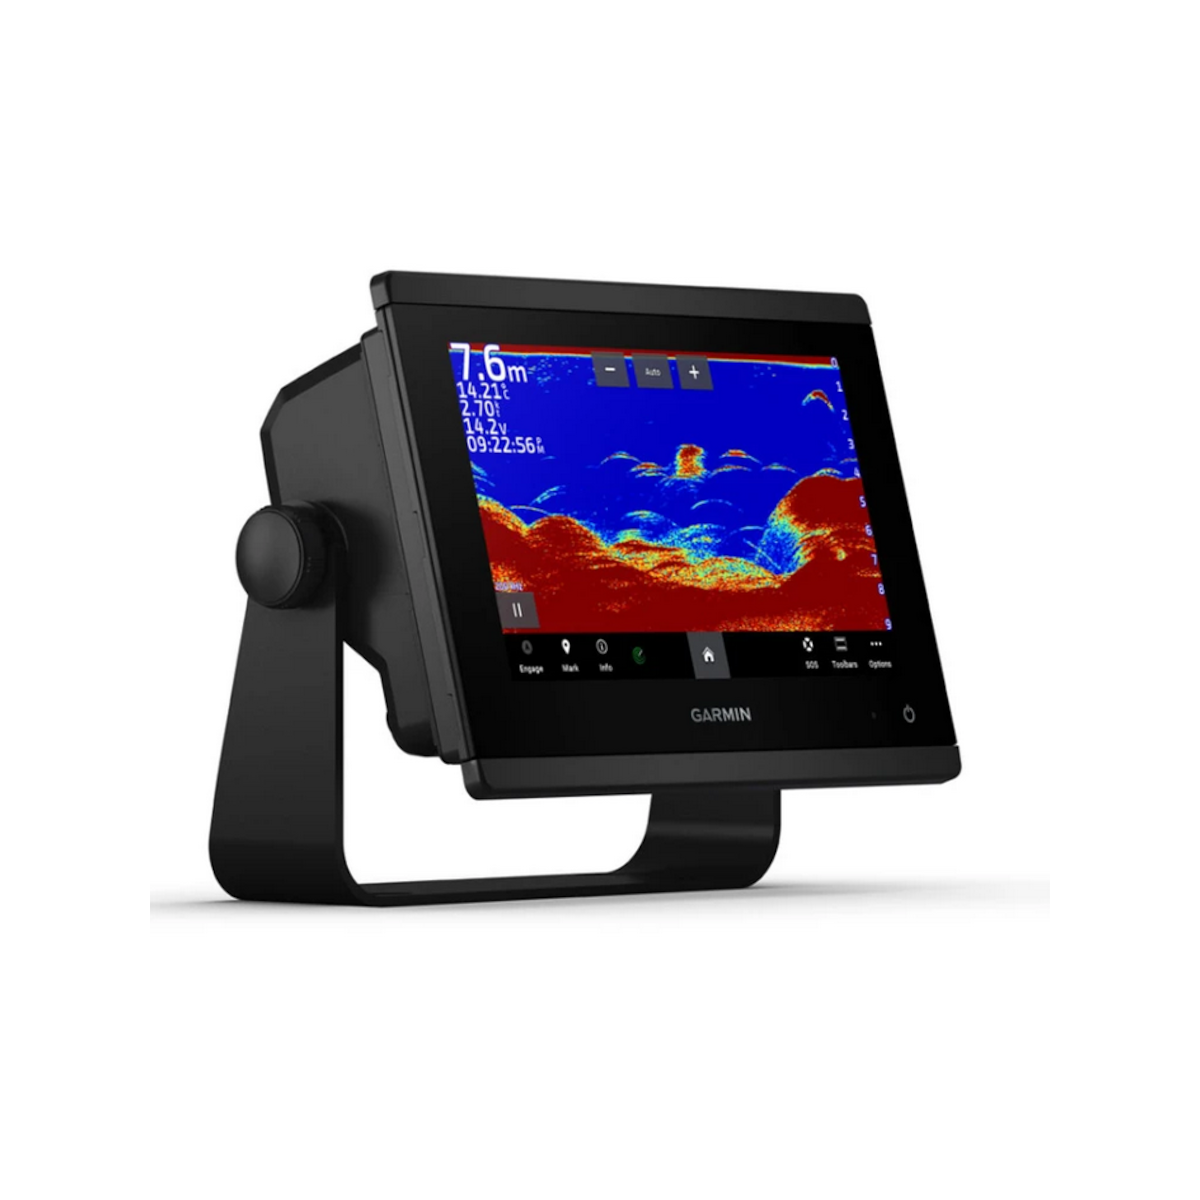 Garmin GPSMAP 923xsv kaartplotter met aanraakscherm